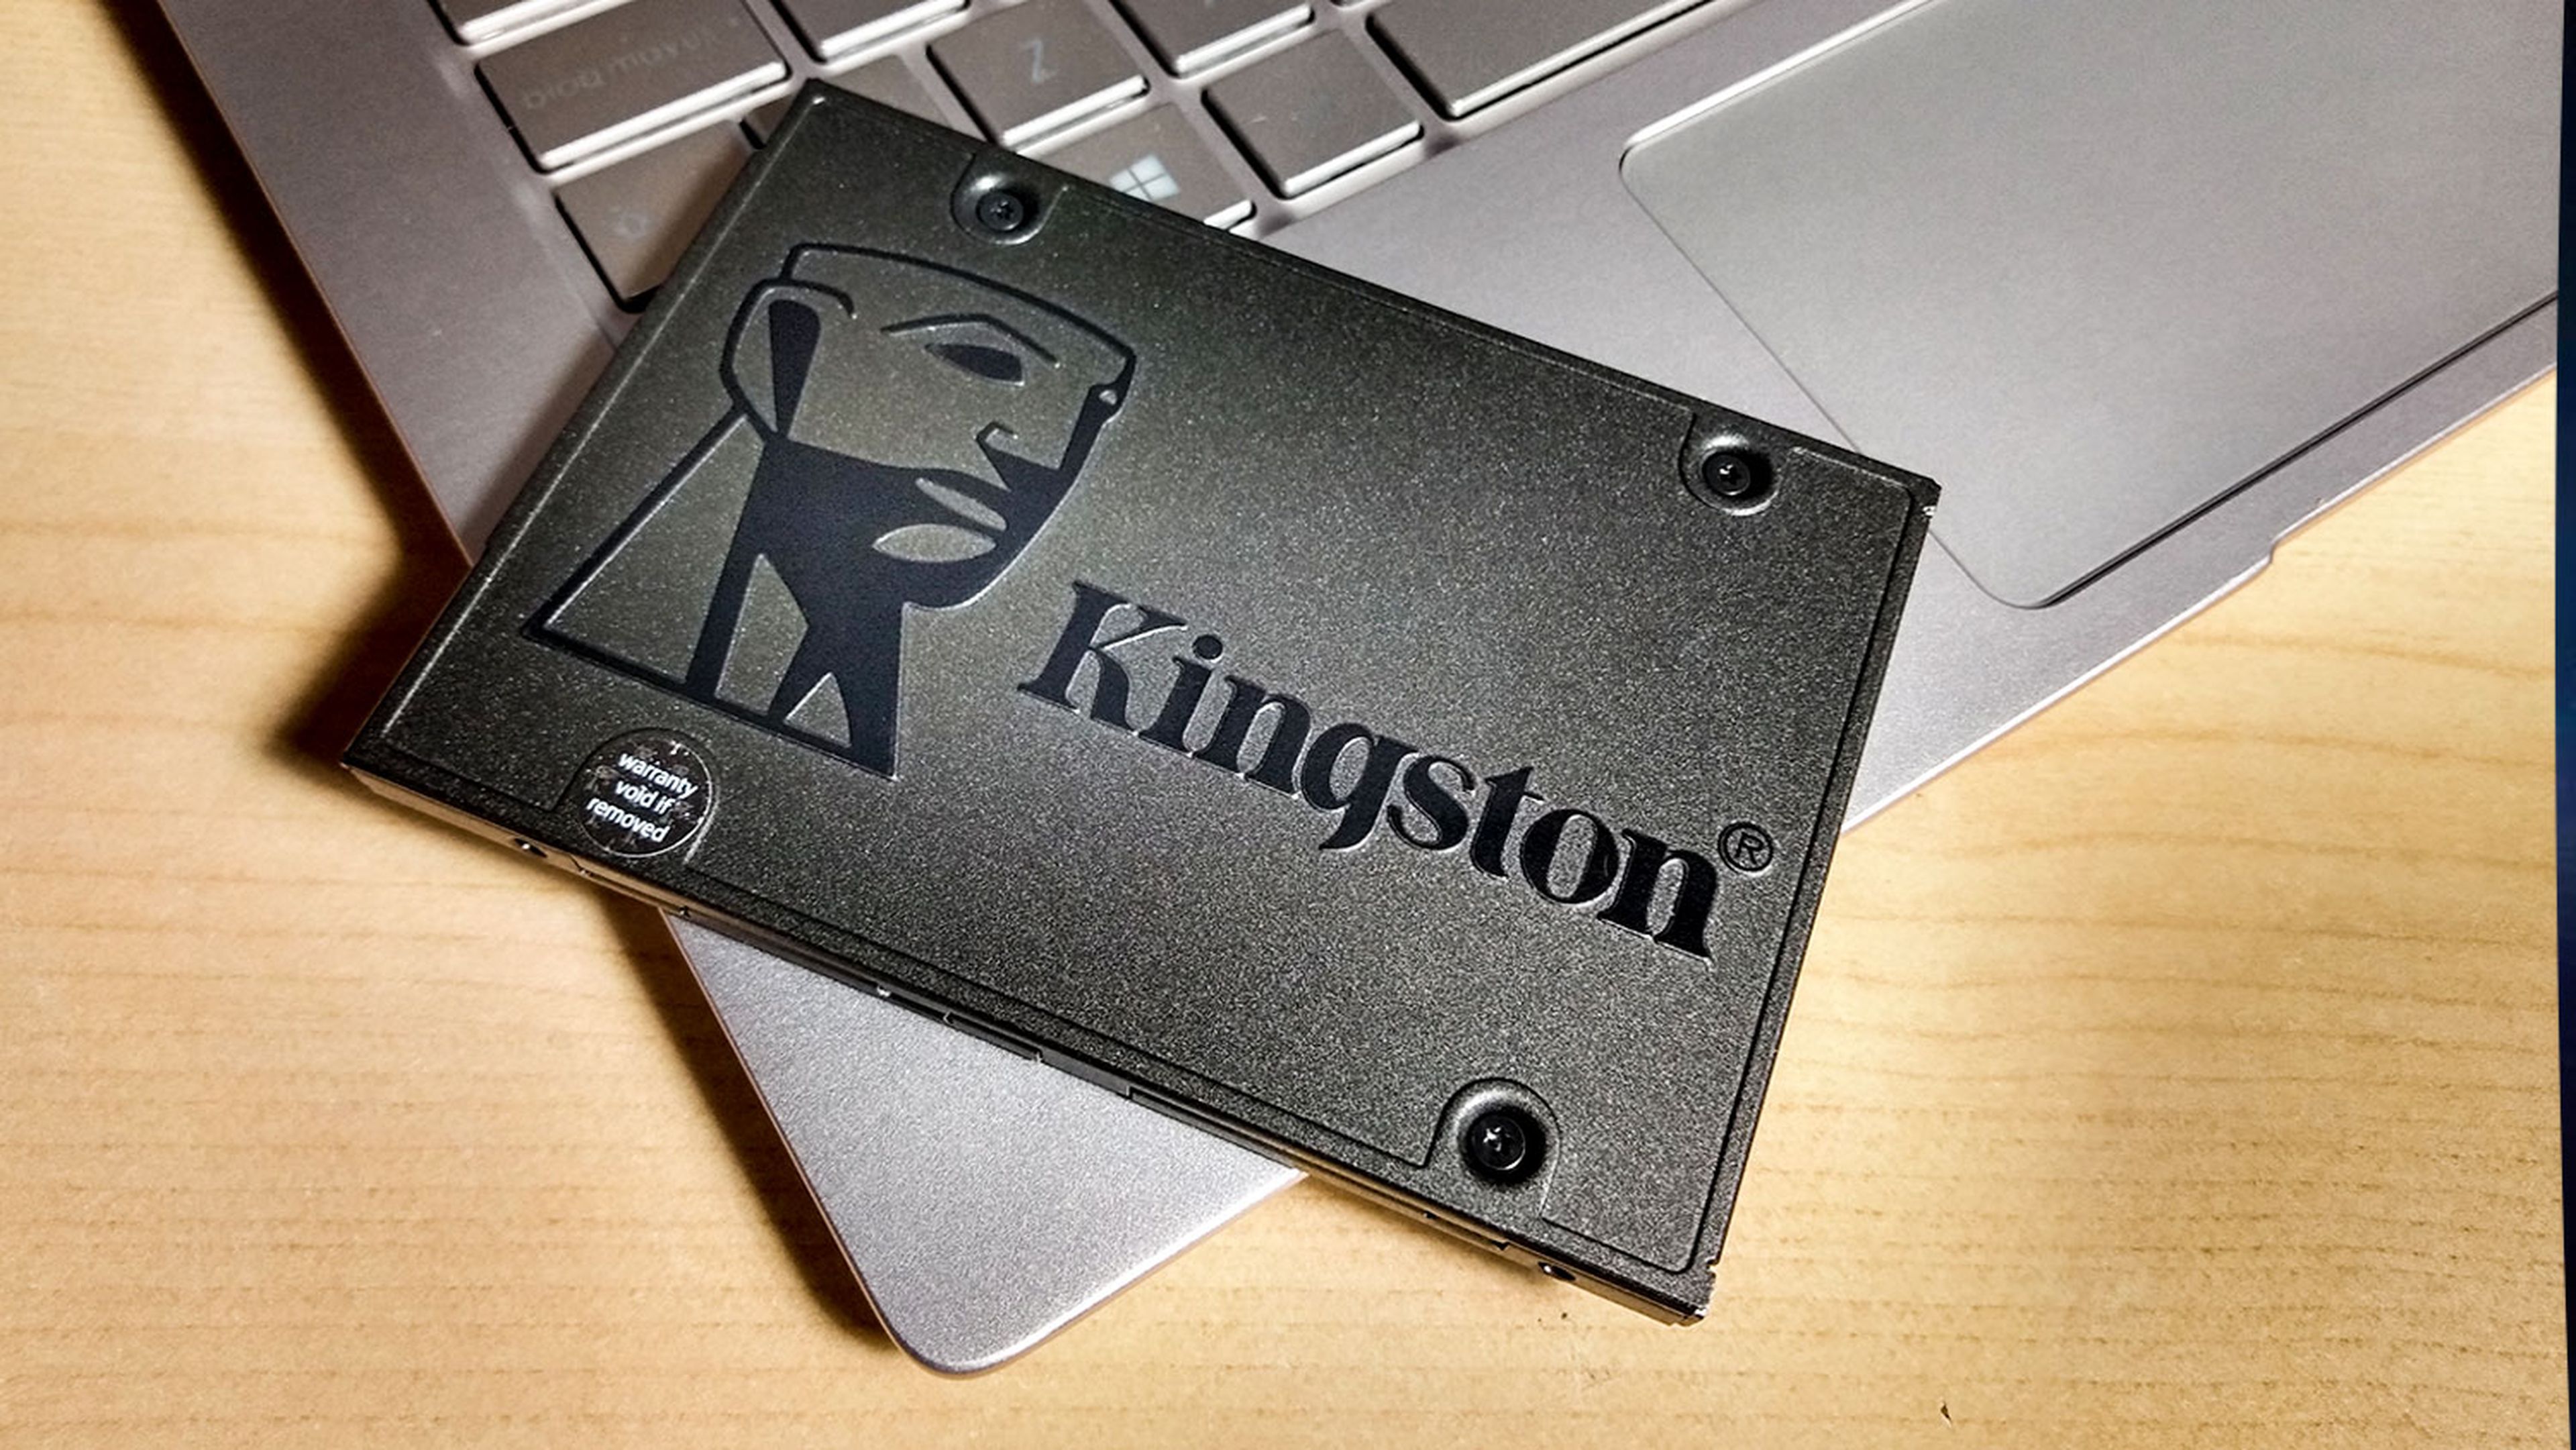 Dale vida a tu portátil con este SSD Kingston de 240 GB en oferta en Amazon